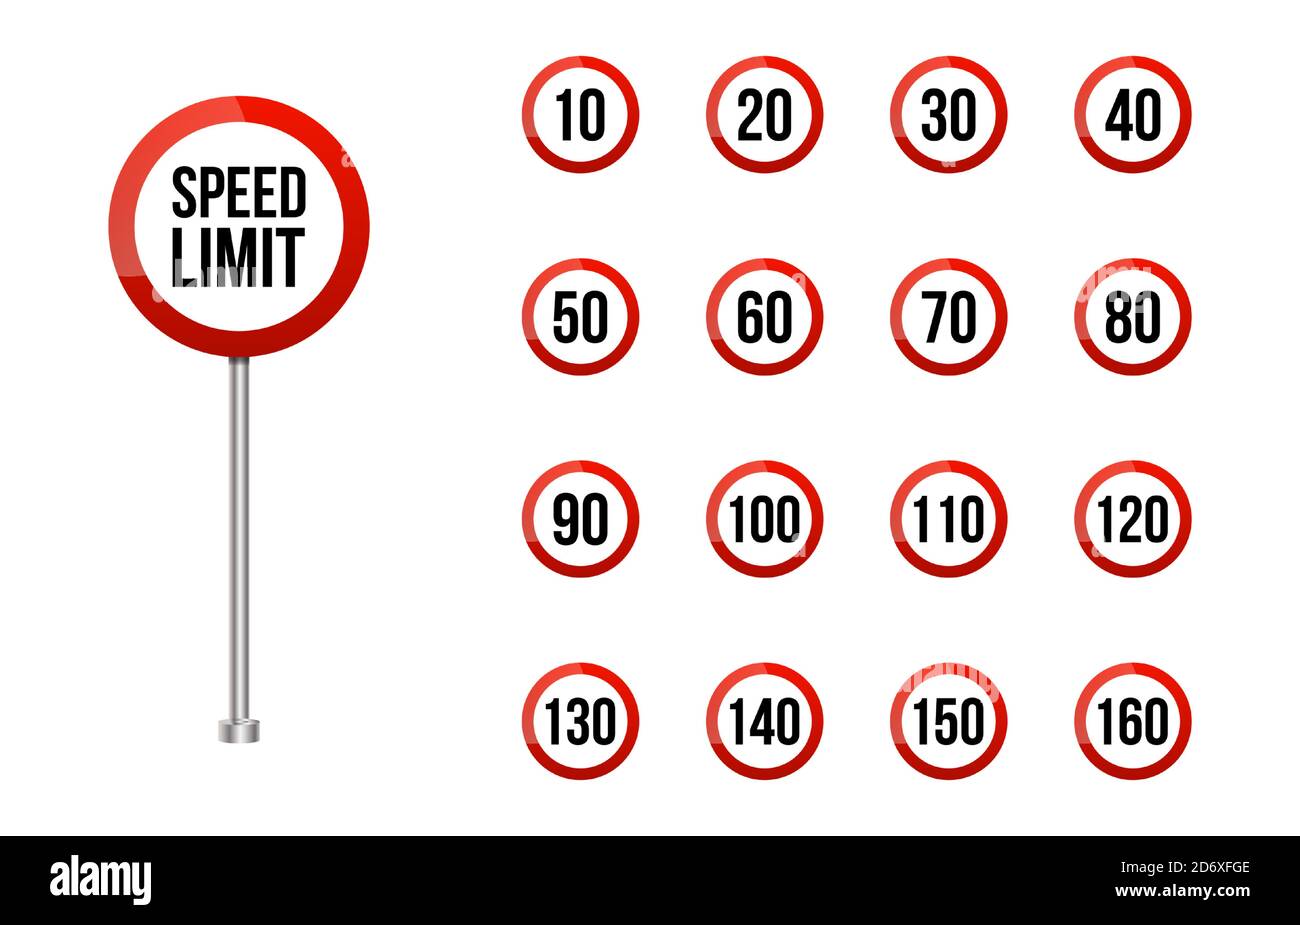 Geschwindigkeitsbegrenzung Straßenschild gesetzt.abgerundete Straße Geschwindigkeitsbegrenzung Zeichen isoliert auf weiß gesetzt. Realistisches rotes Straßenschild gesetzt Stock Vektor